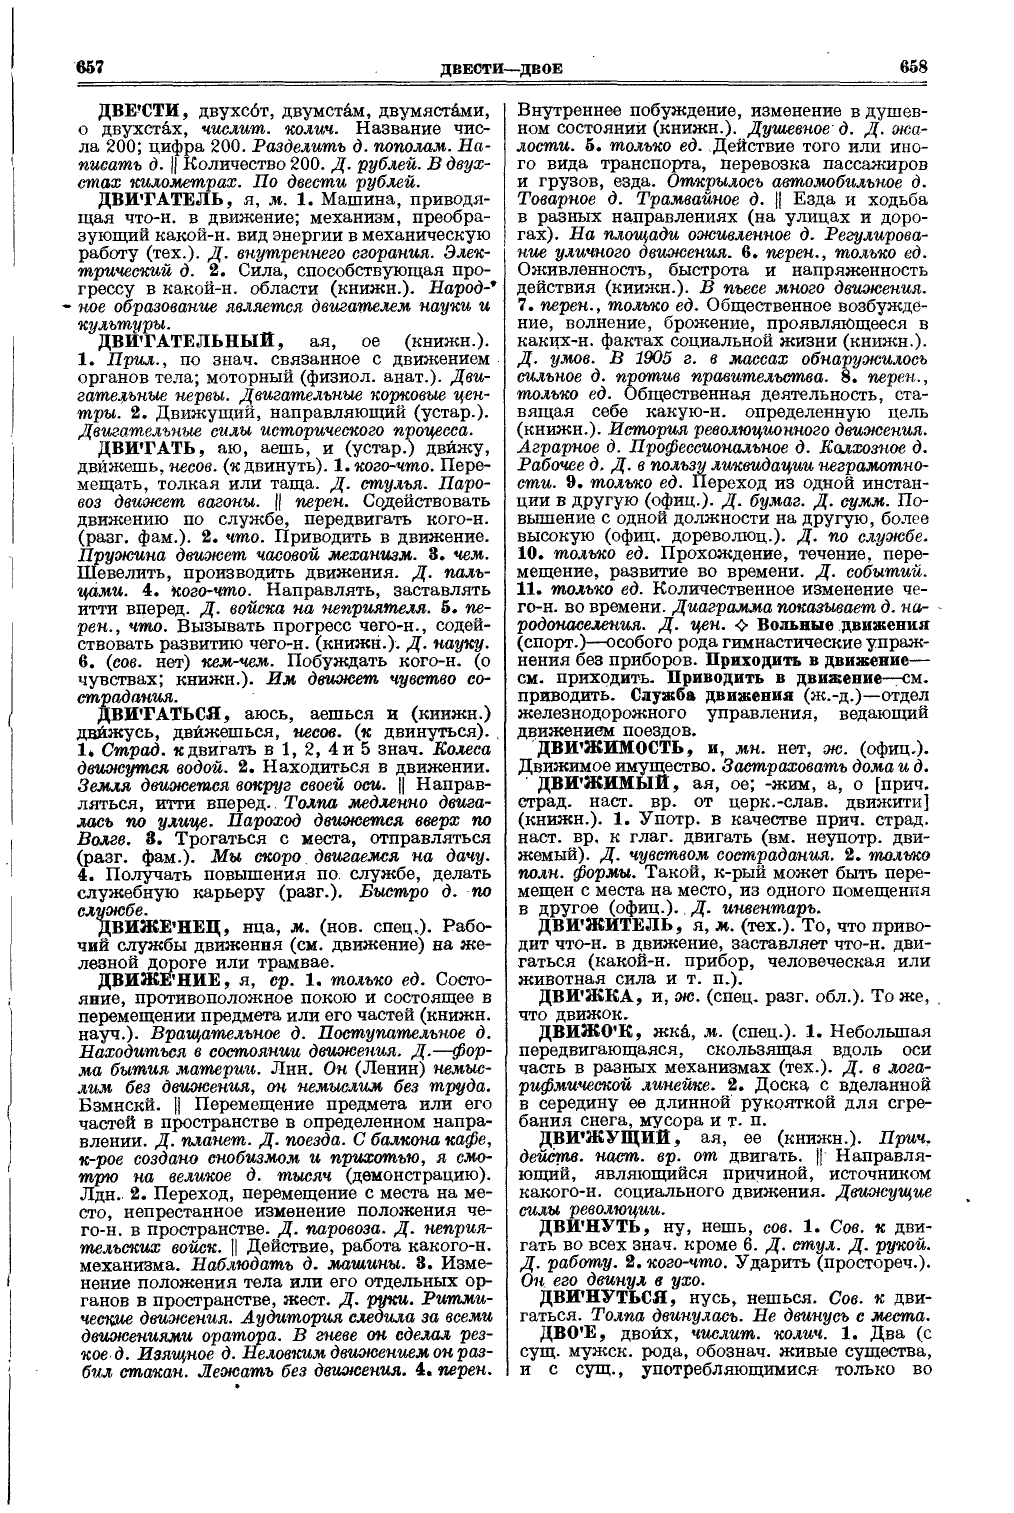 Фотокопия pdf / скан страницы 367 толкового словаря Ушакова (том 1)